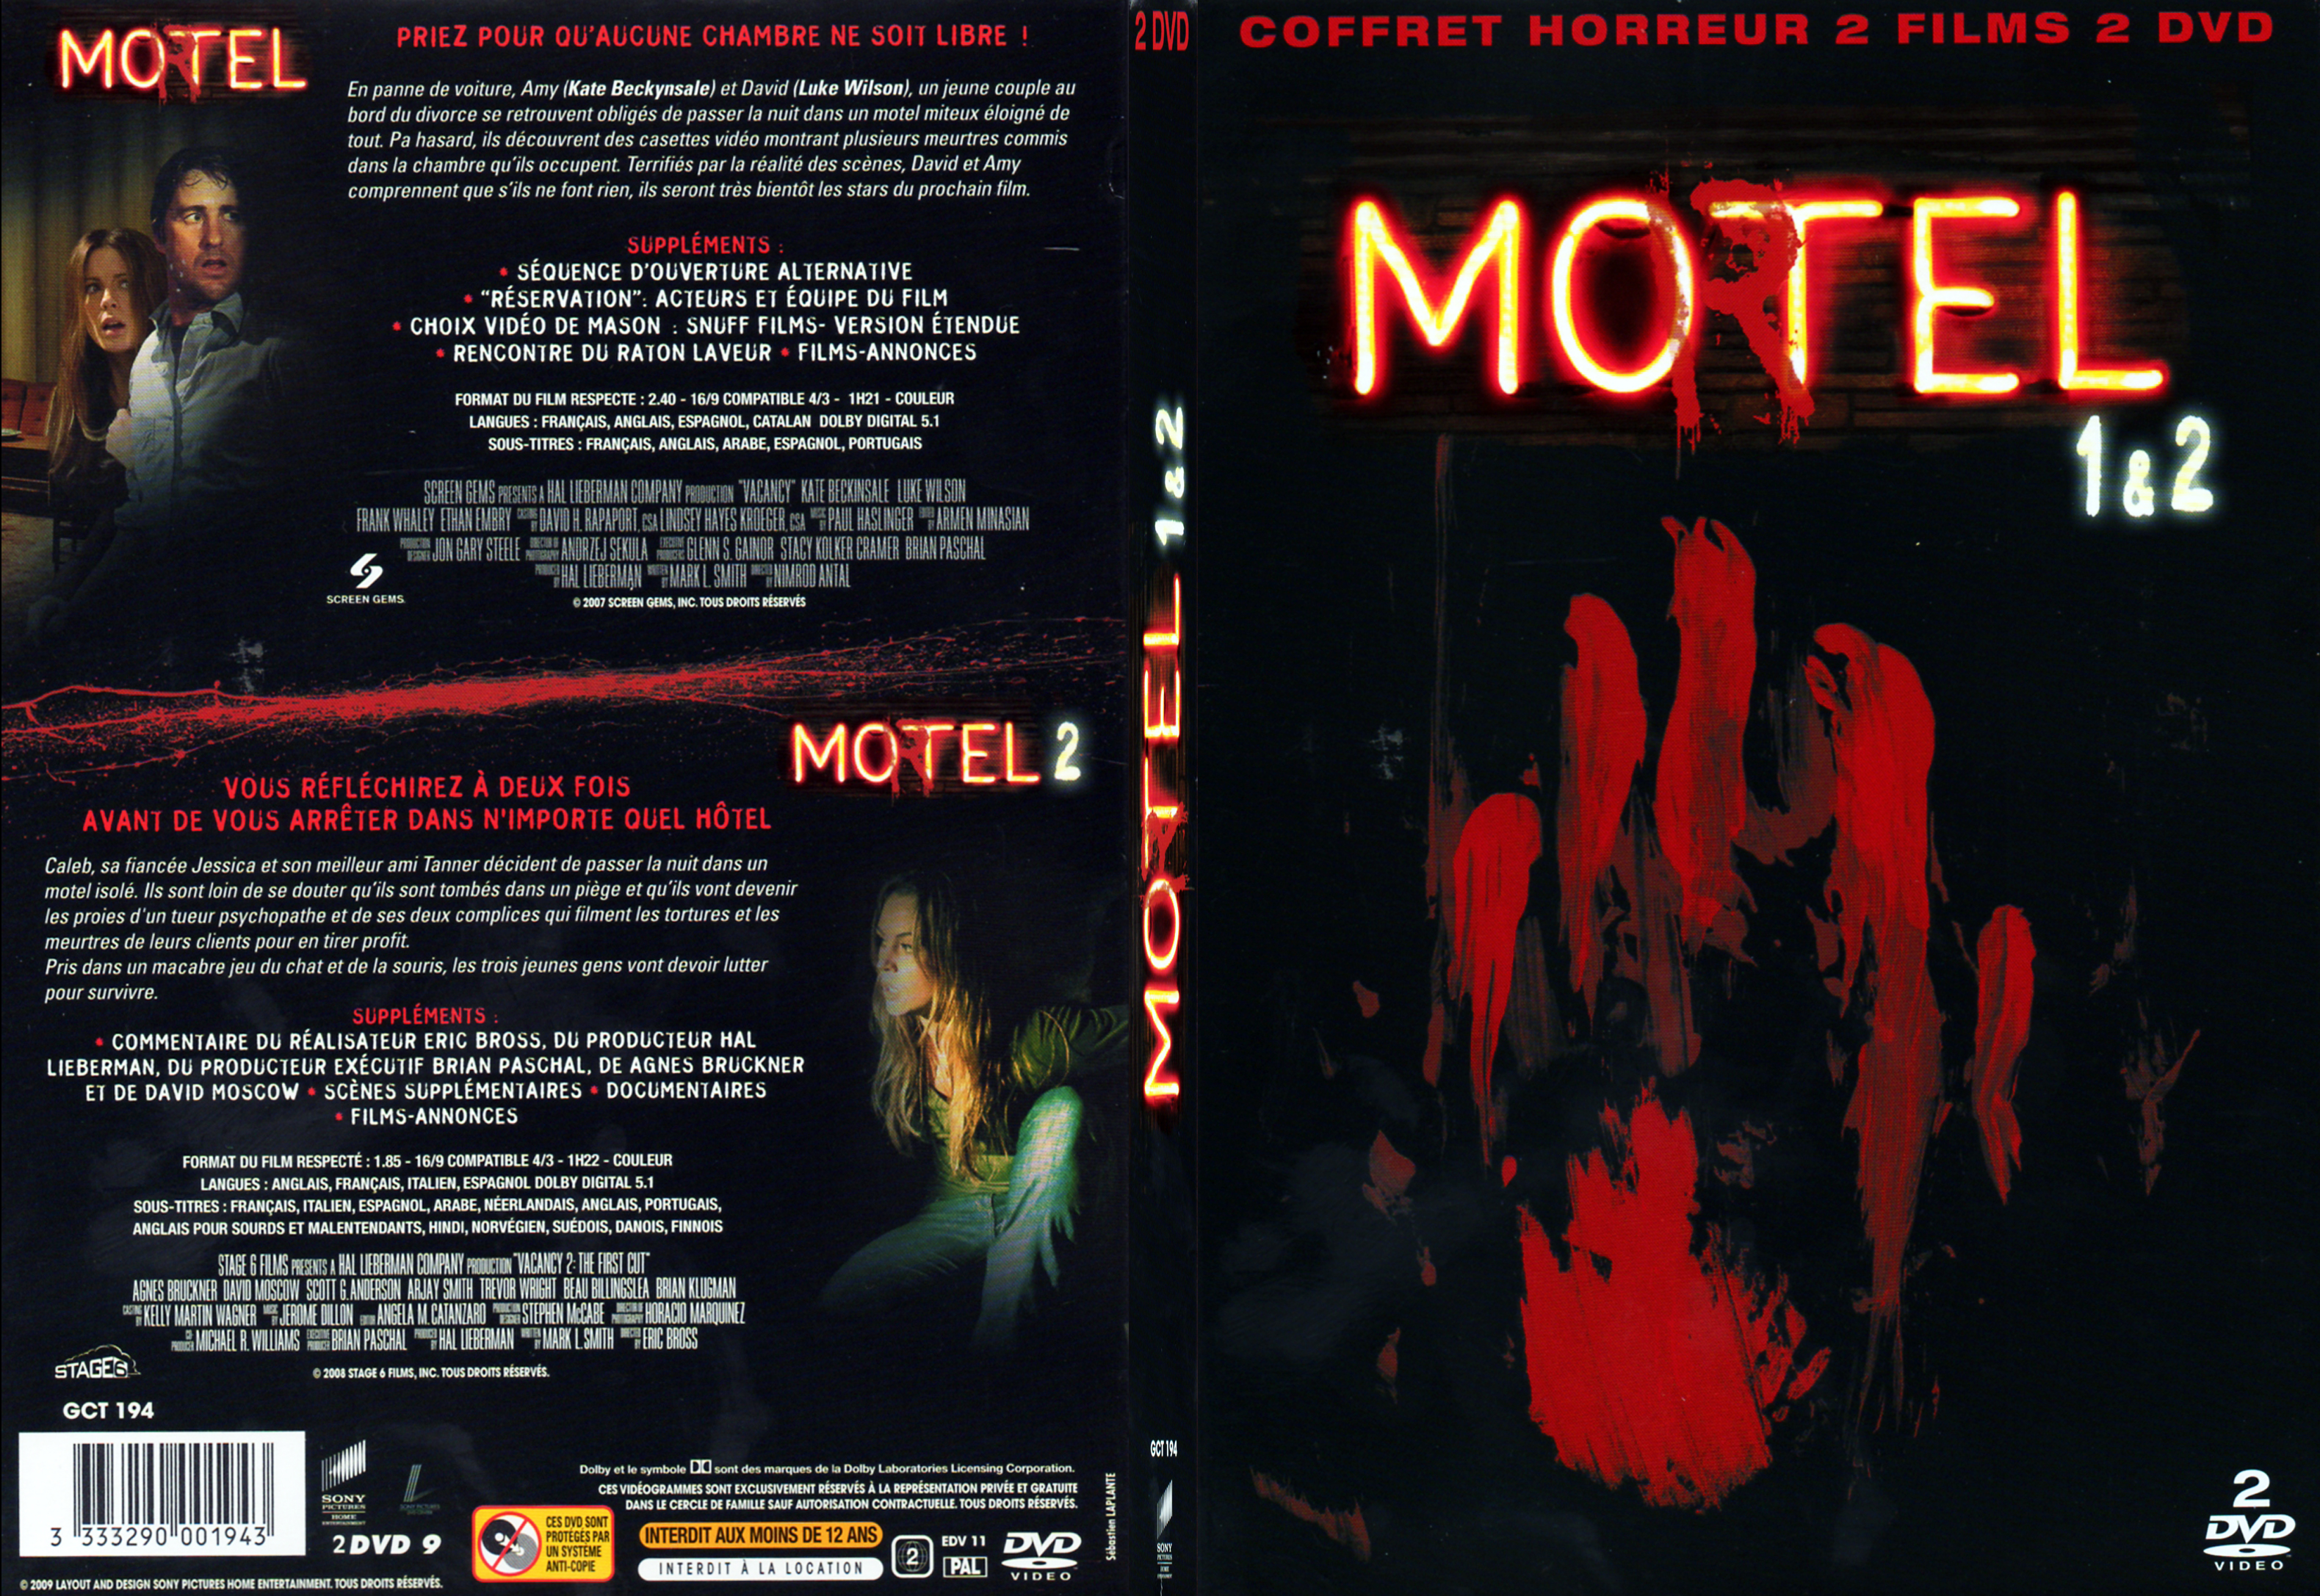 Jaquette DVD Motel 1 et 2 COFFRET - SLIM